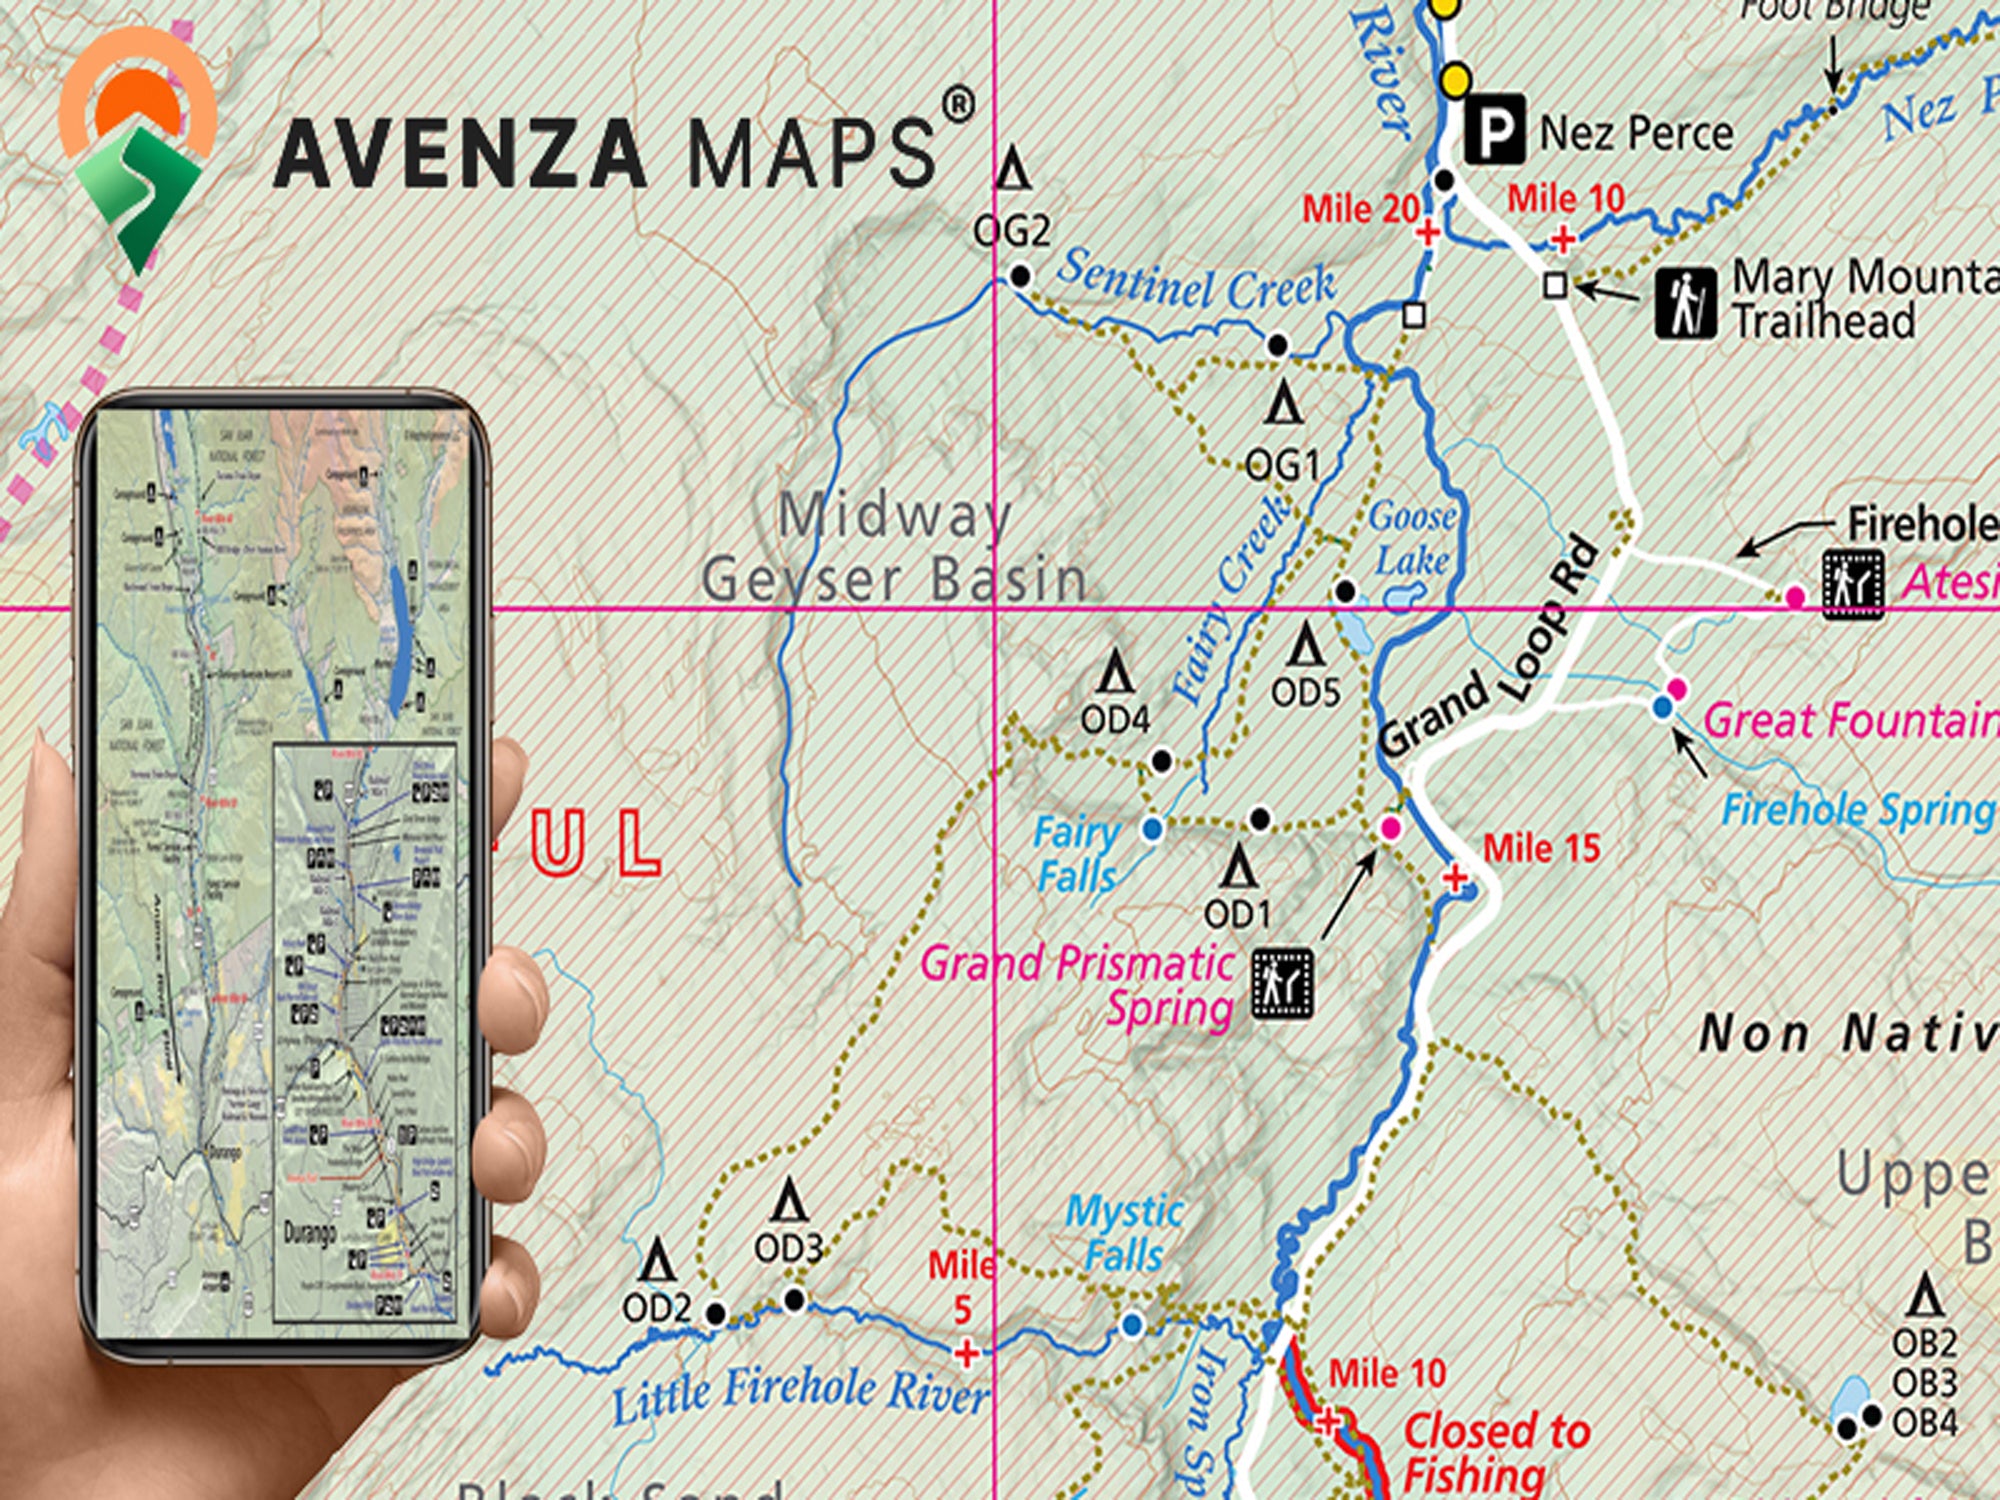 Colorado River, Colorado Pocket Fishing Map